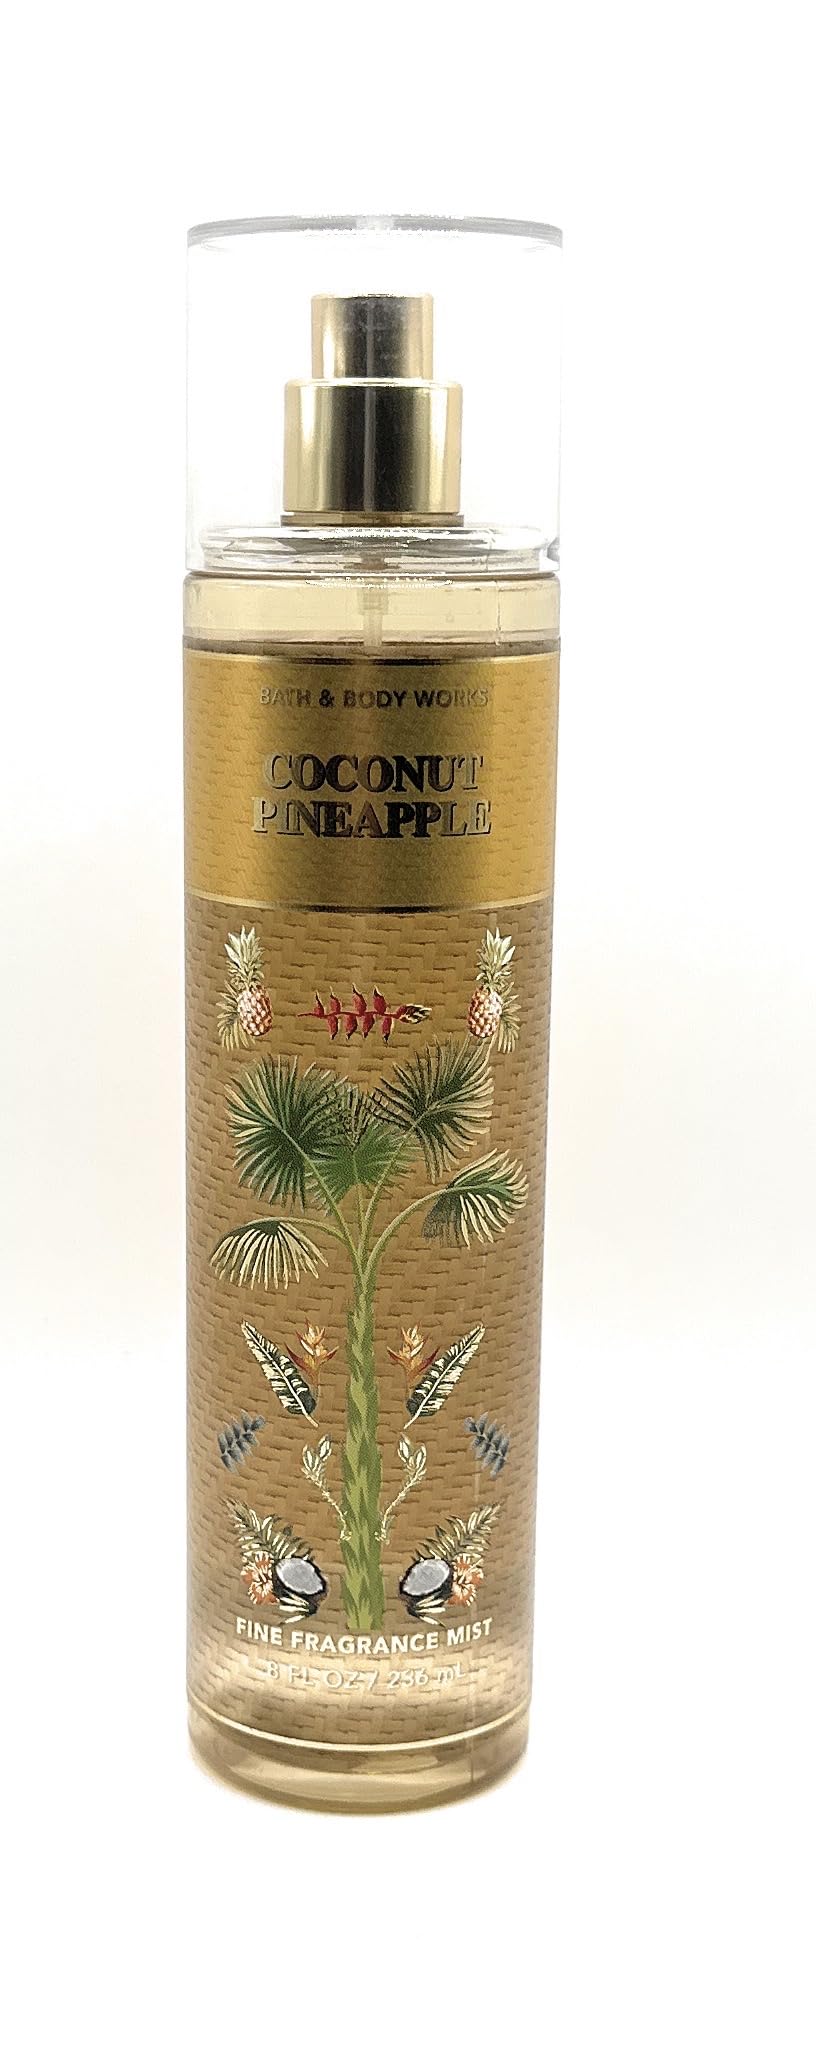 Bath & Body Works Coconut Pineapple Fine Fragrance Mist 8 Fluid Ounce Body Spray